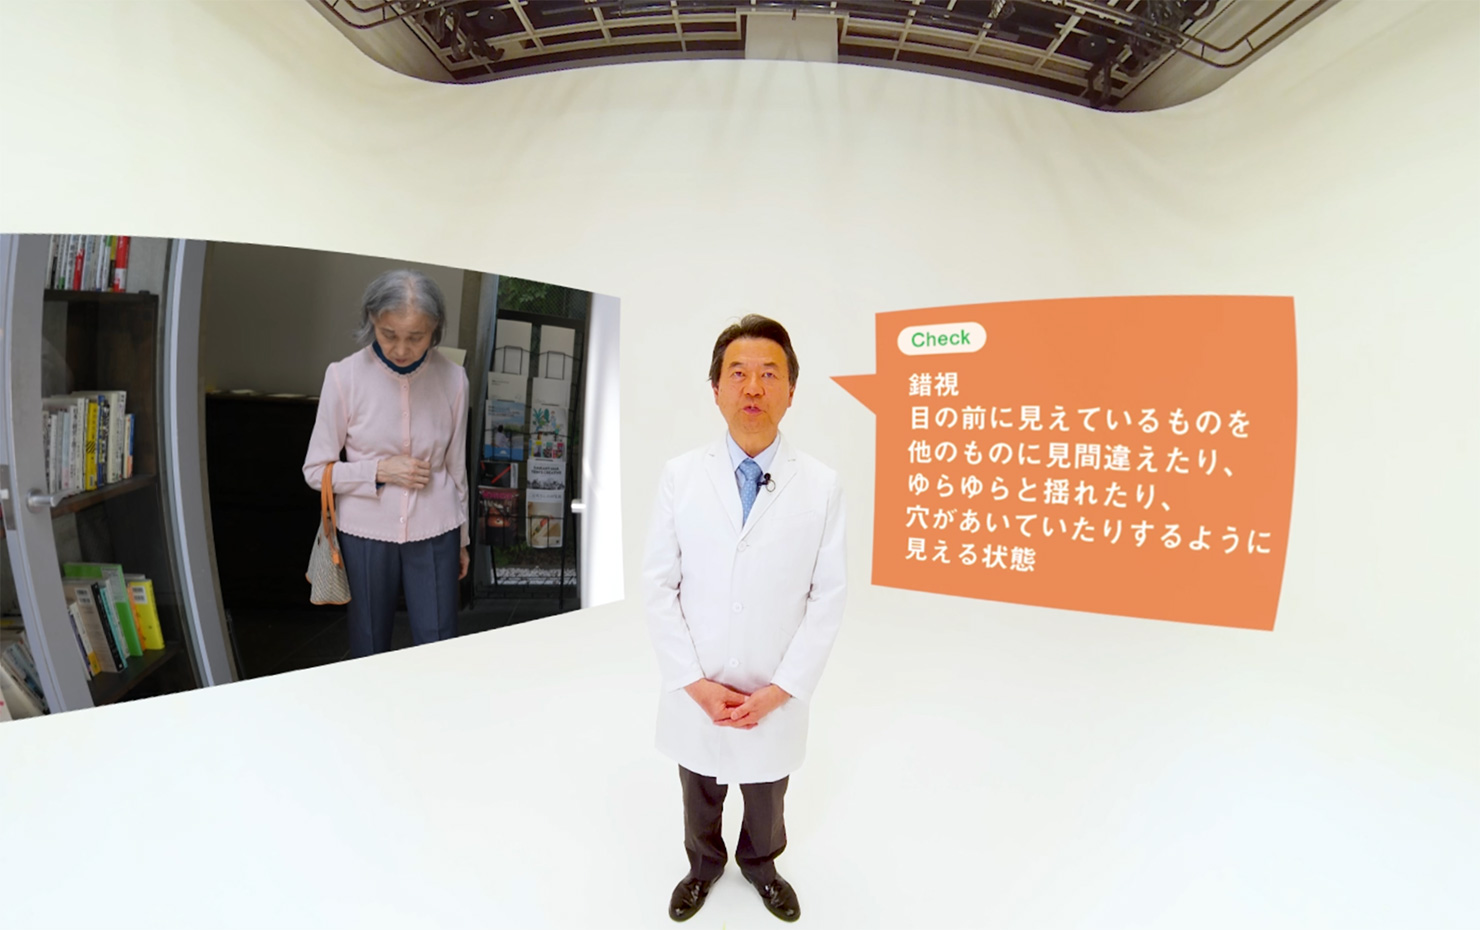 2022年9月21日発行の朝日新聞に、朝日新聞社からの依頼でコンセントが共同制作した「朝日新聞認知症VR」の記事が掲載されています